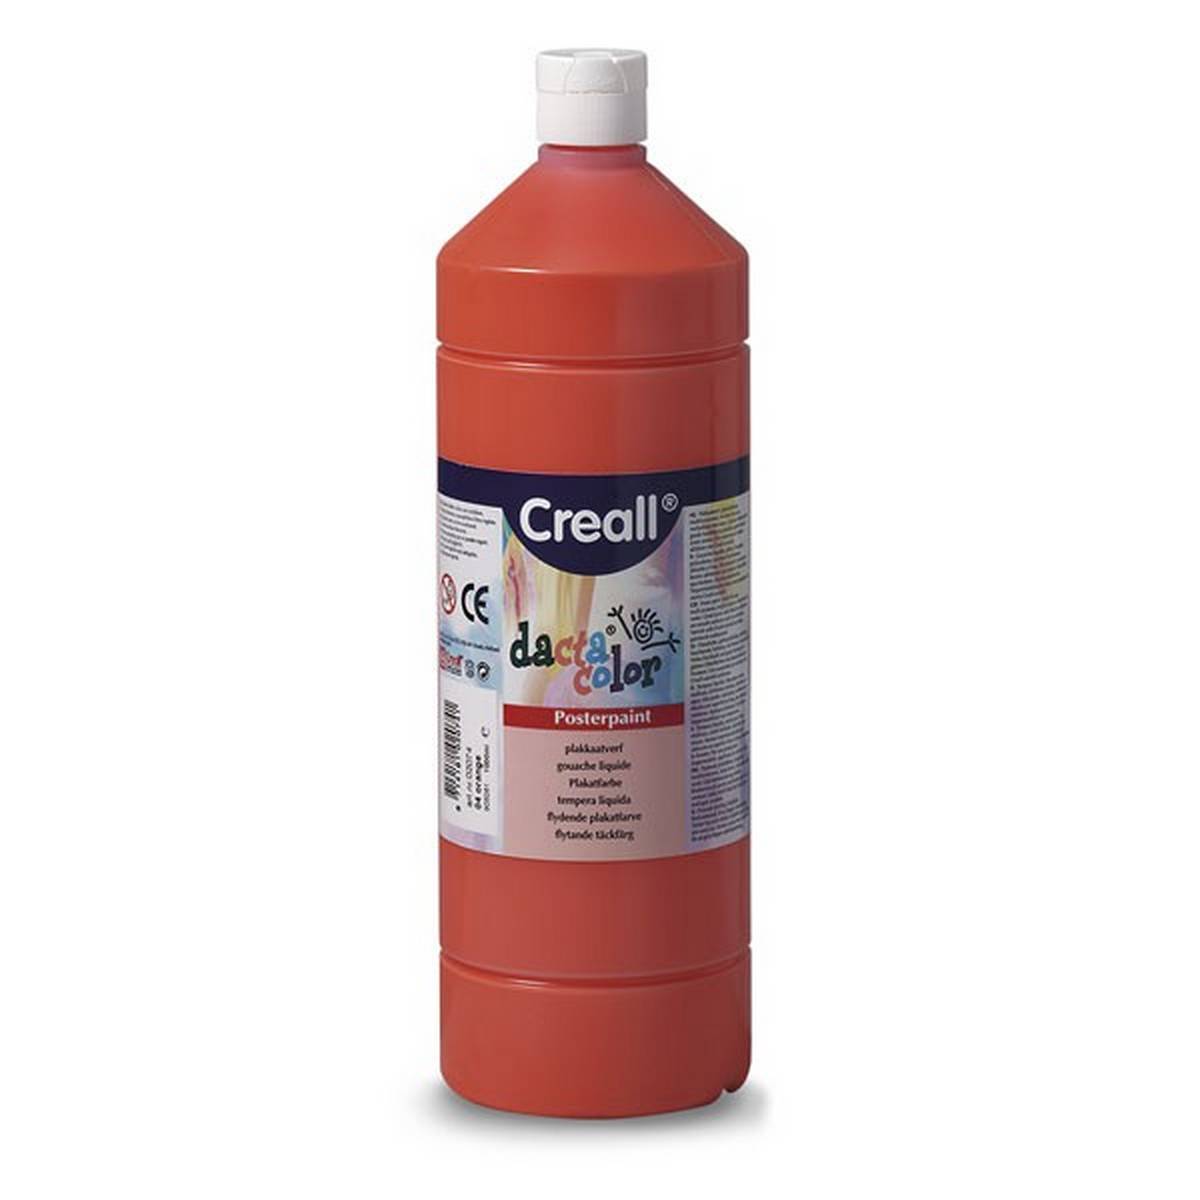 Creall 1 litre Bottle Poster Paint - Orange